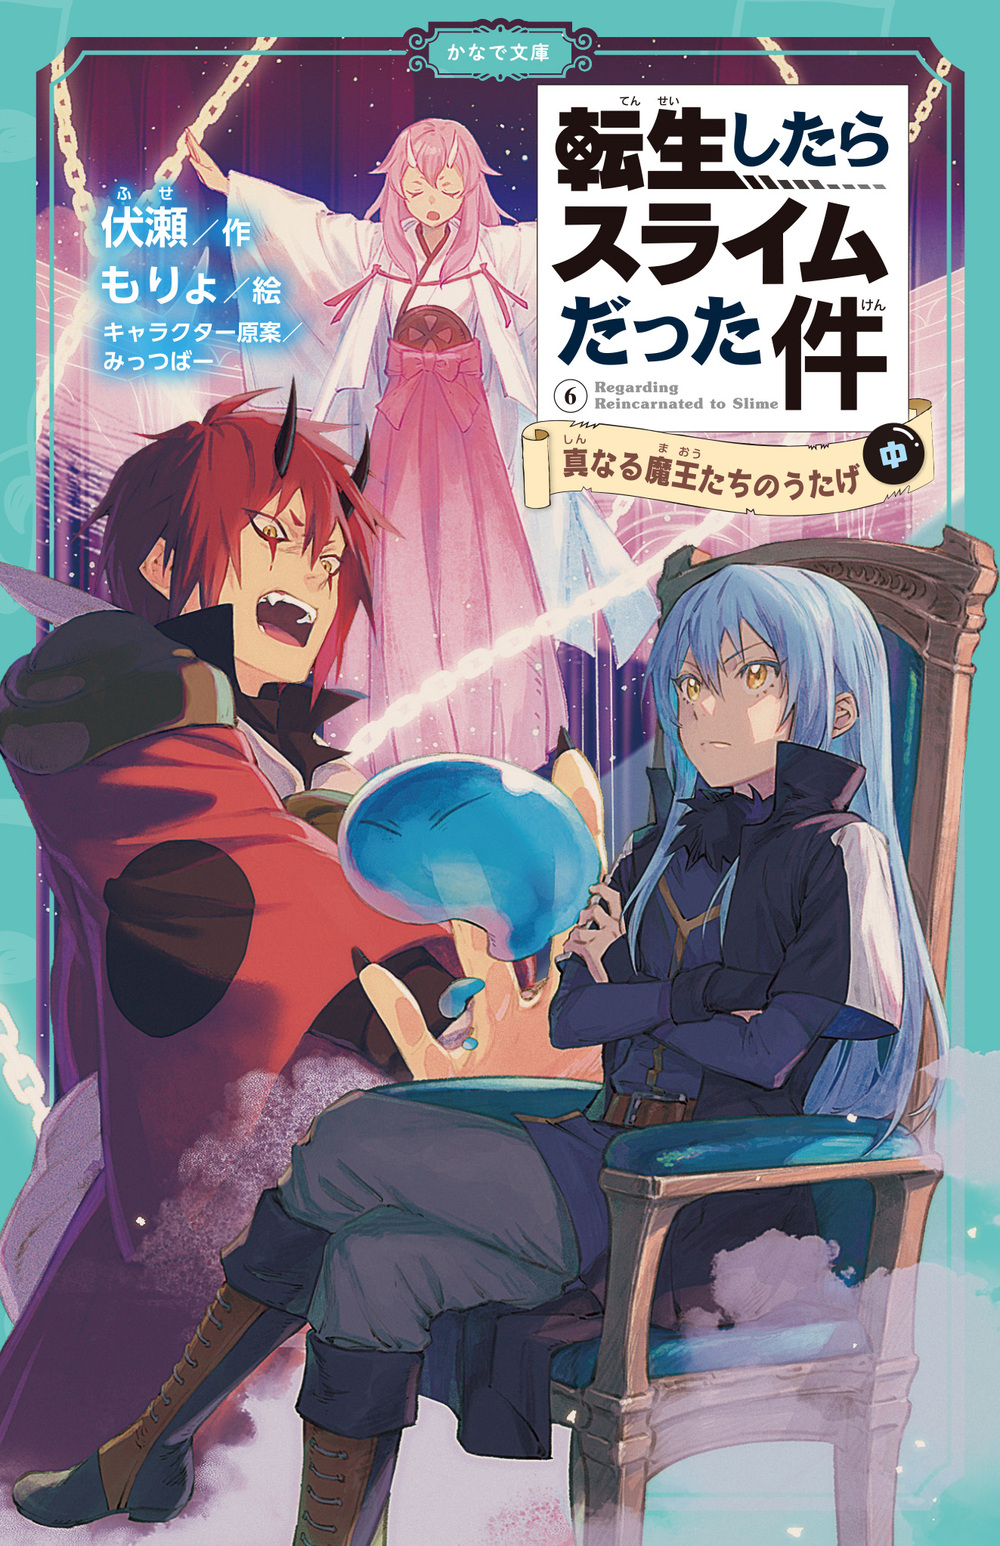 Manga Volume 1, Tensei Shitara Slime Datta Ken Wiki